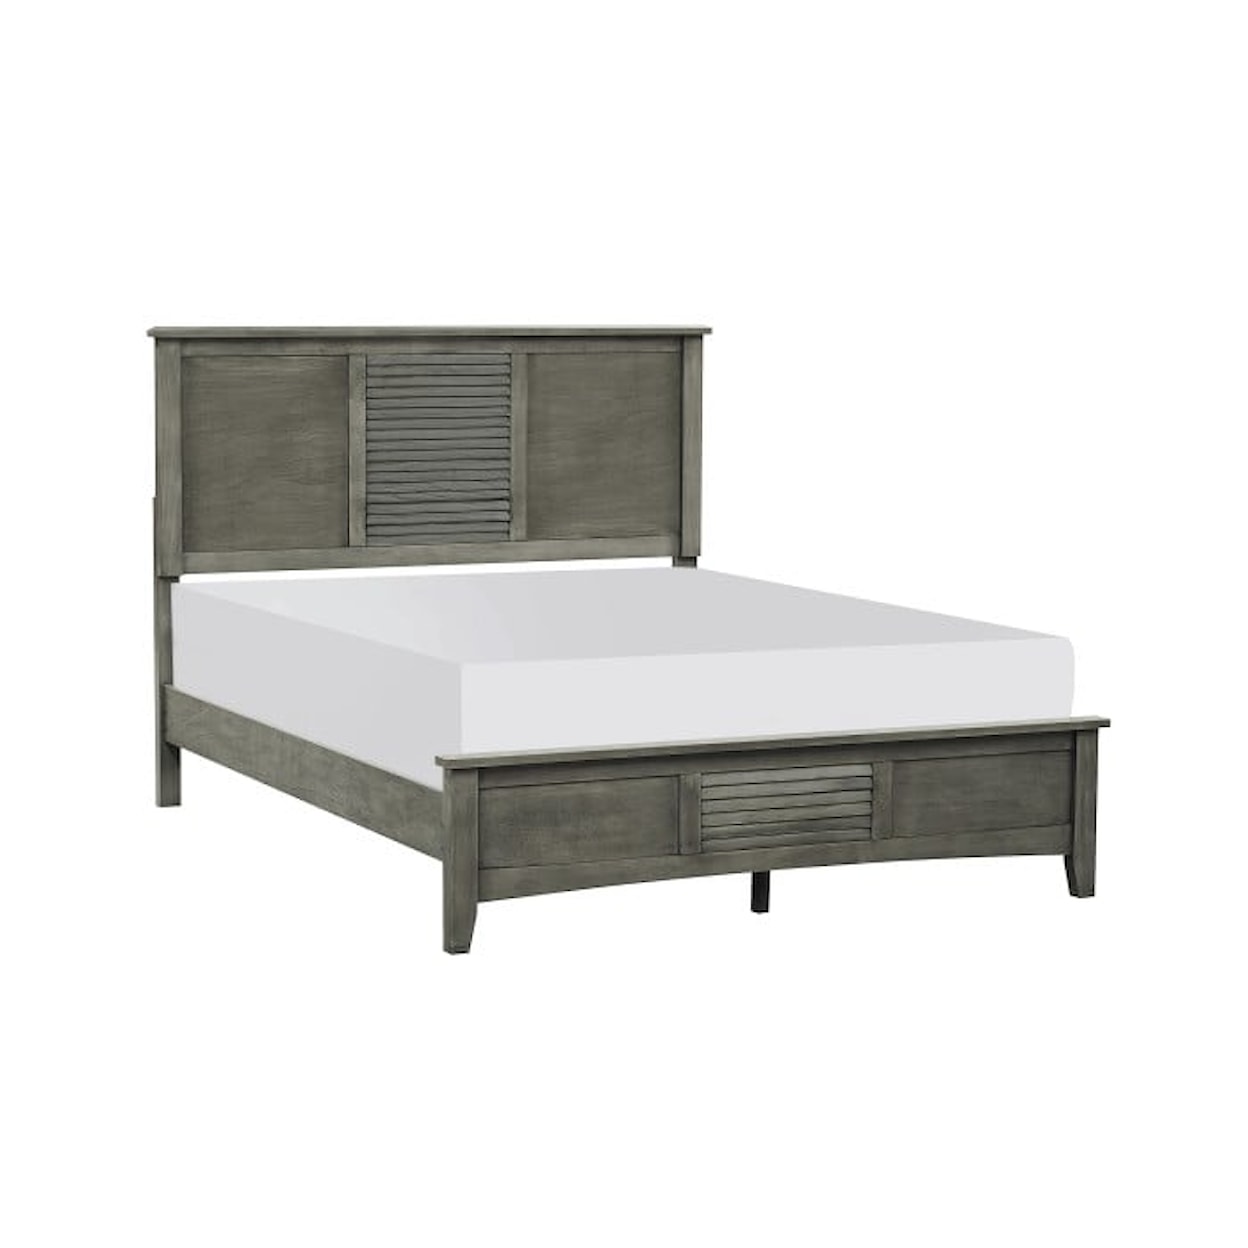 Homelegance Furniture Garcia Full Bed